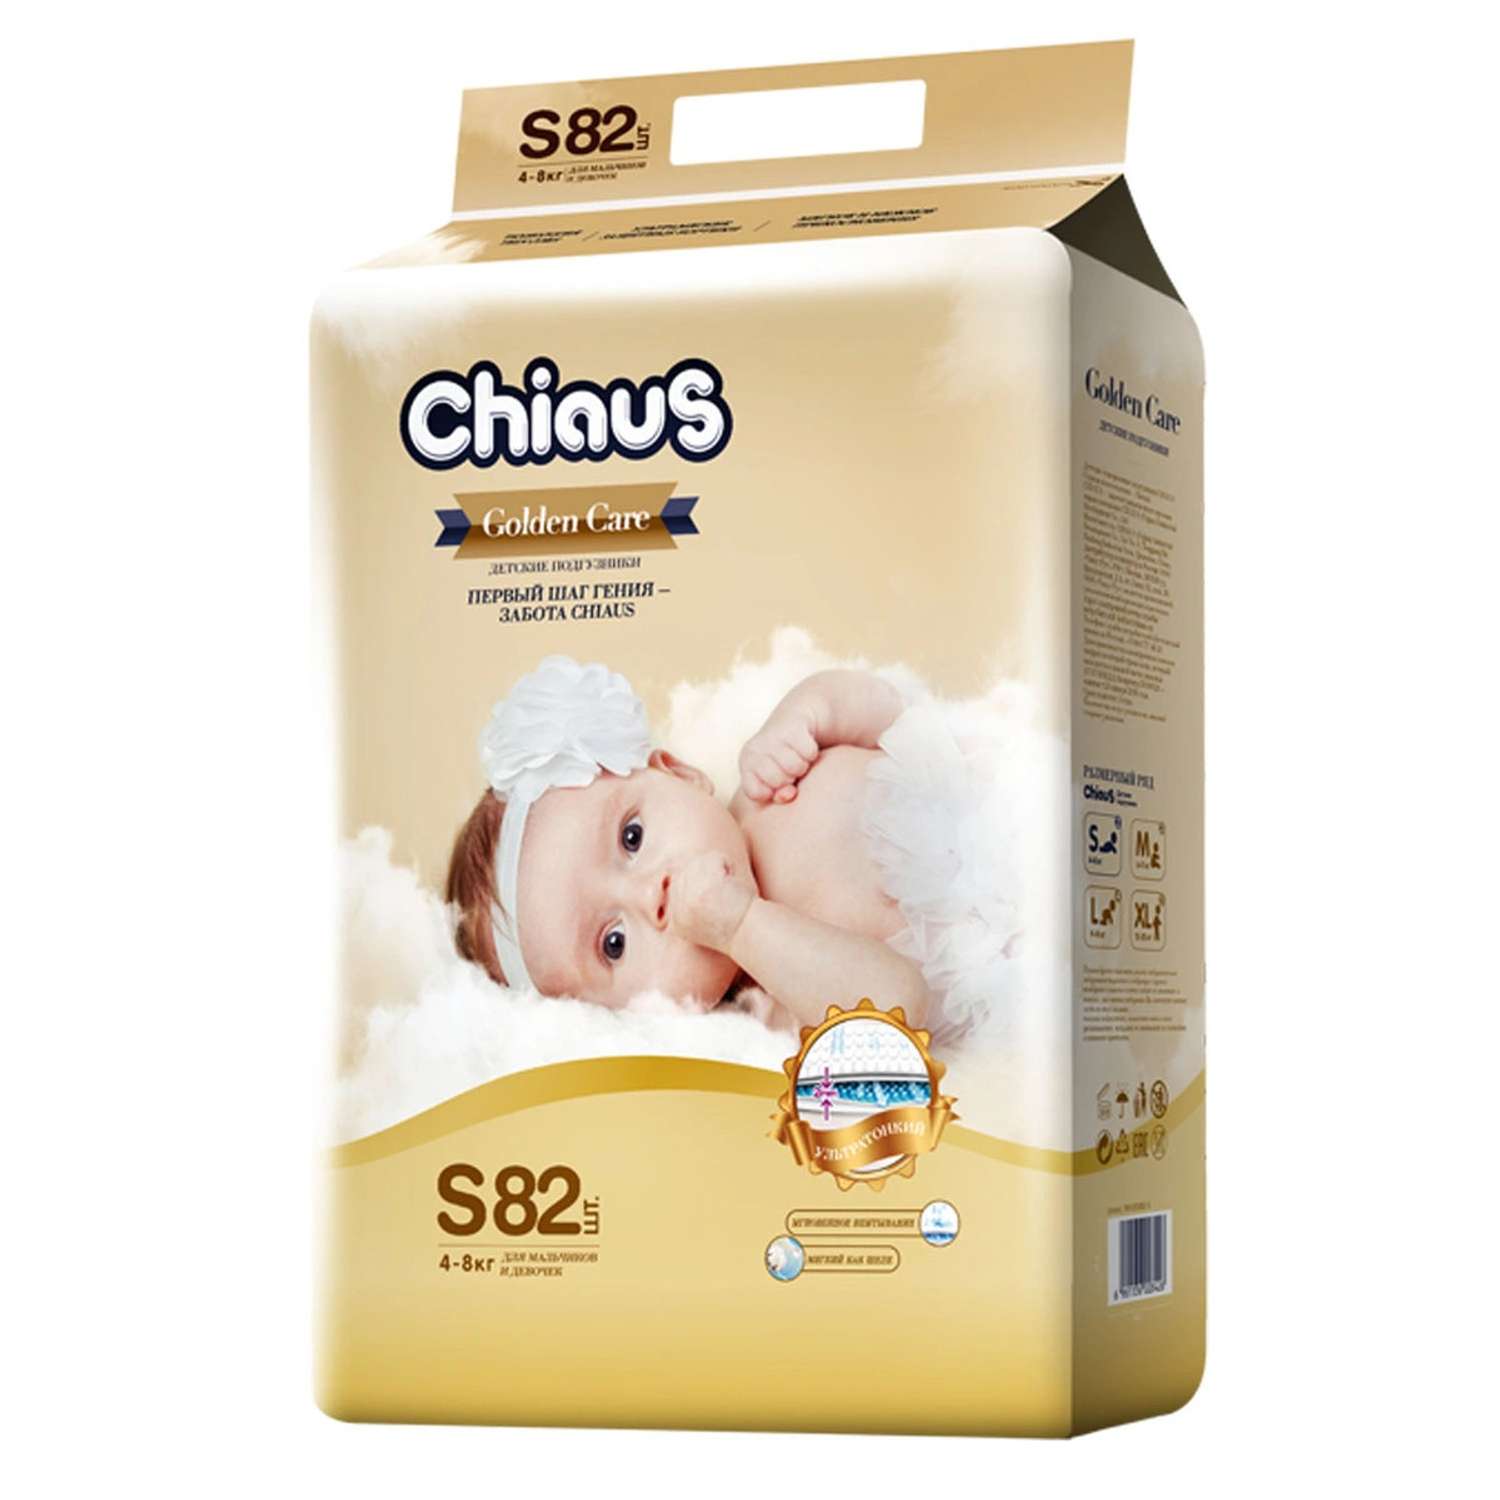 Подгузники Chiaus детские GoIden Care S 4-8 кг 82 шт Chiaus - фото 1